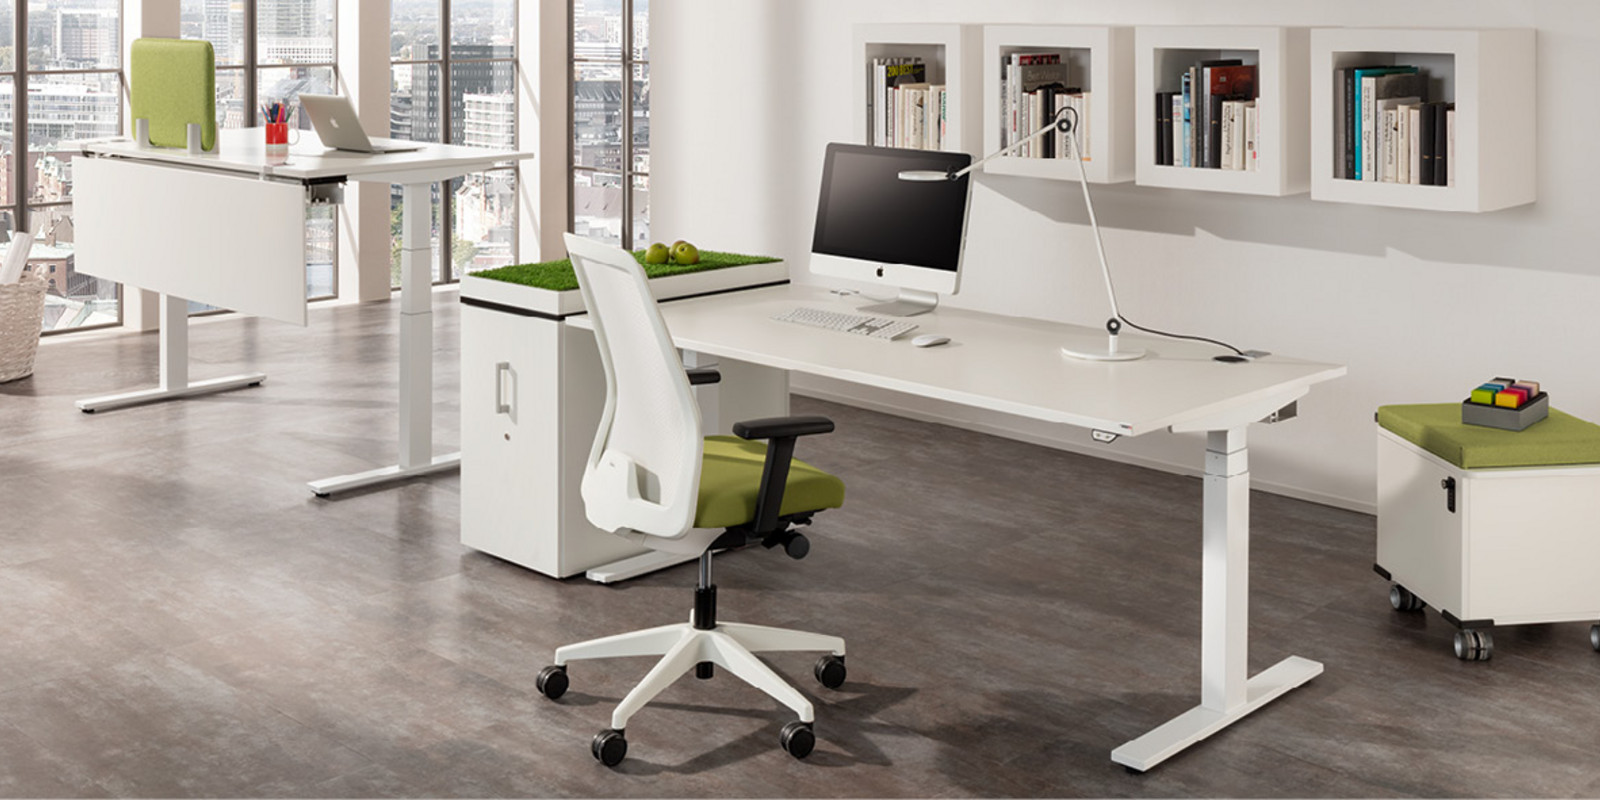 Hält Sie fit auf dem Weg nach oben! Steh-Sitz-Tisch WINEA STARTUP zum Aktionspreis bei pro office Hannover Bild 1